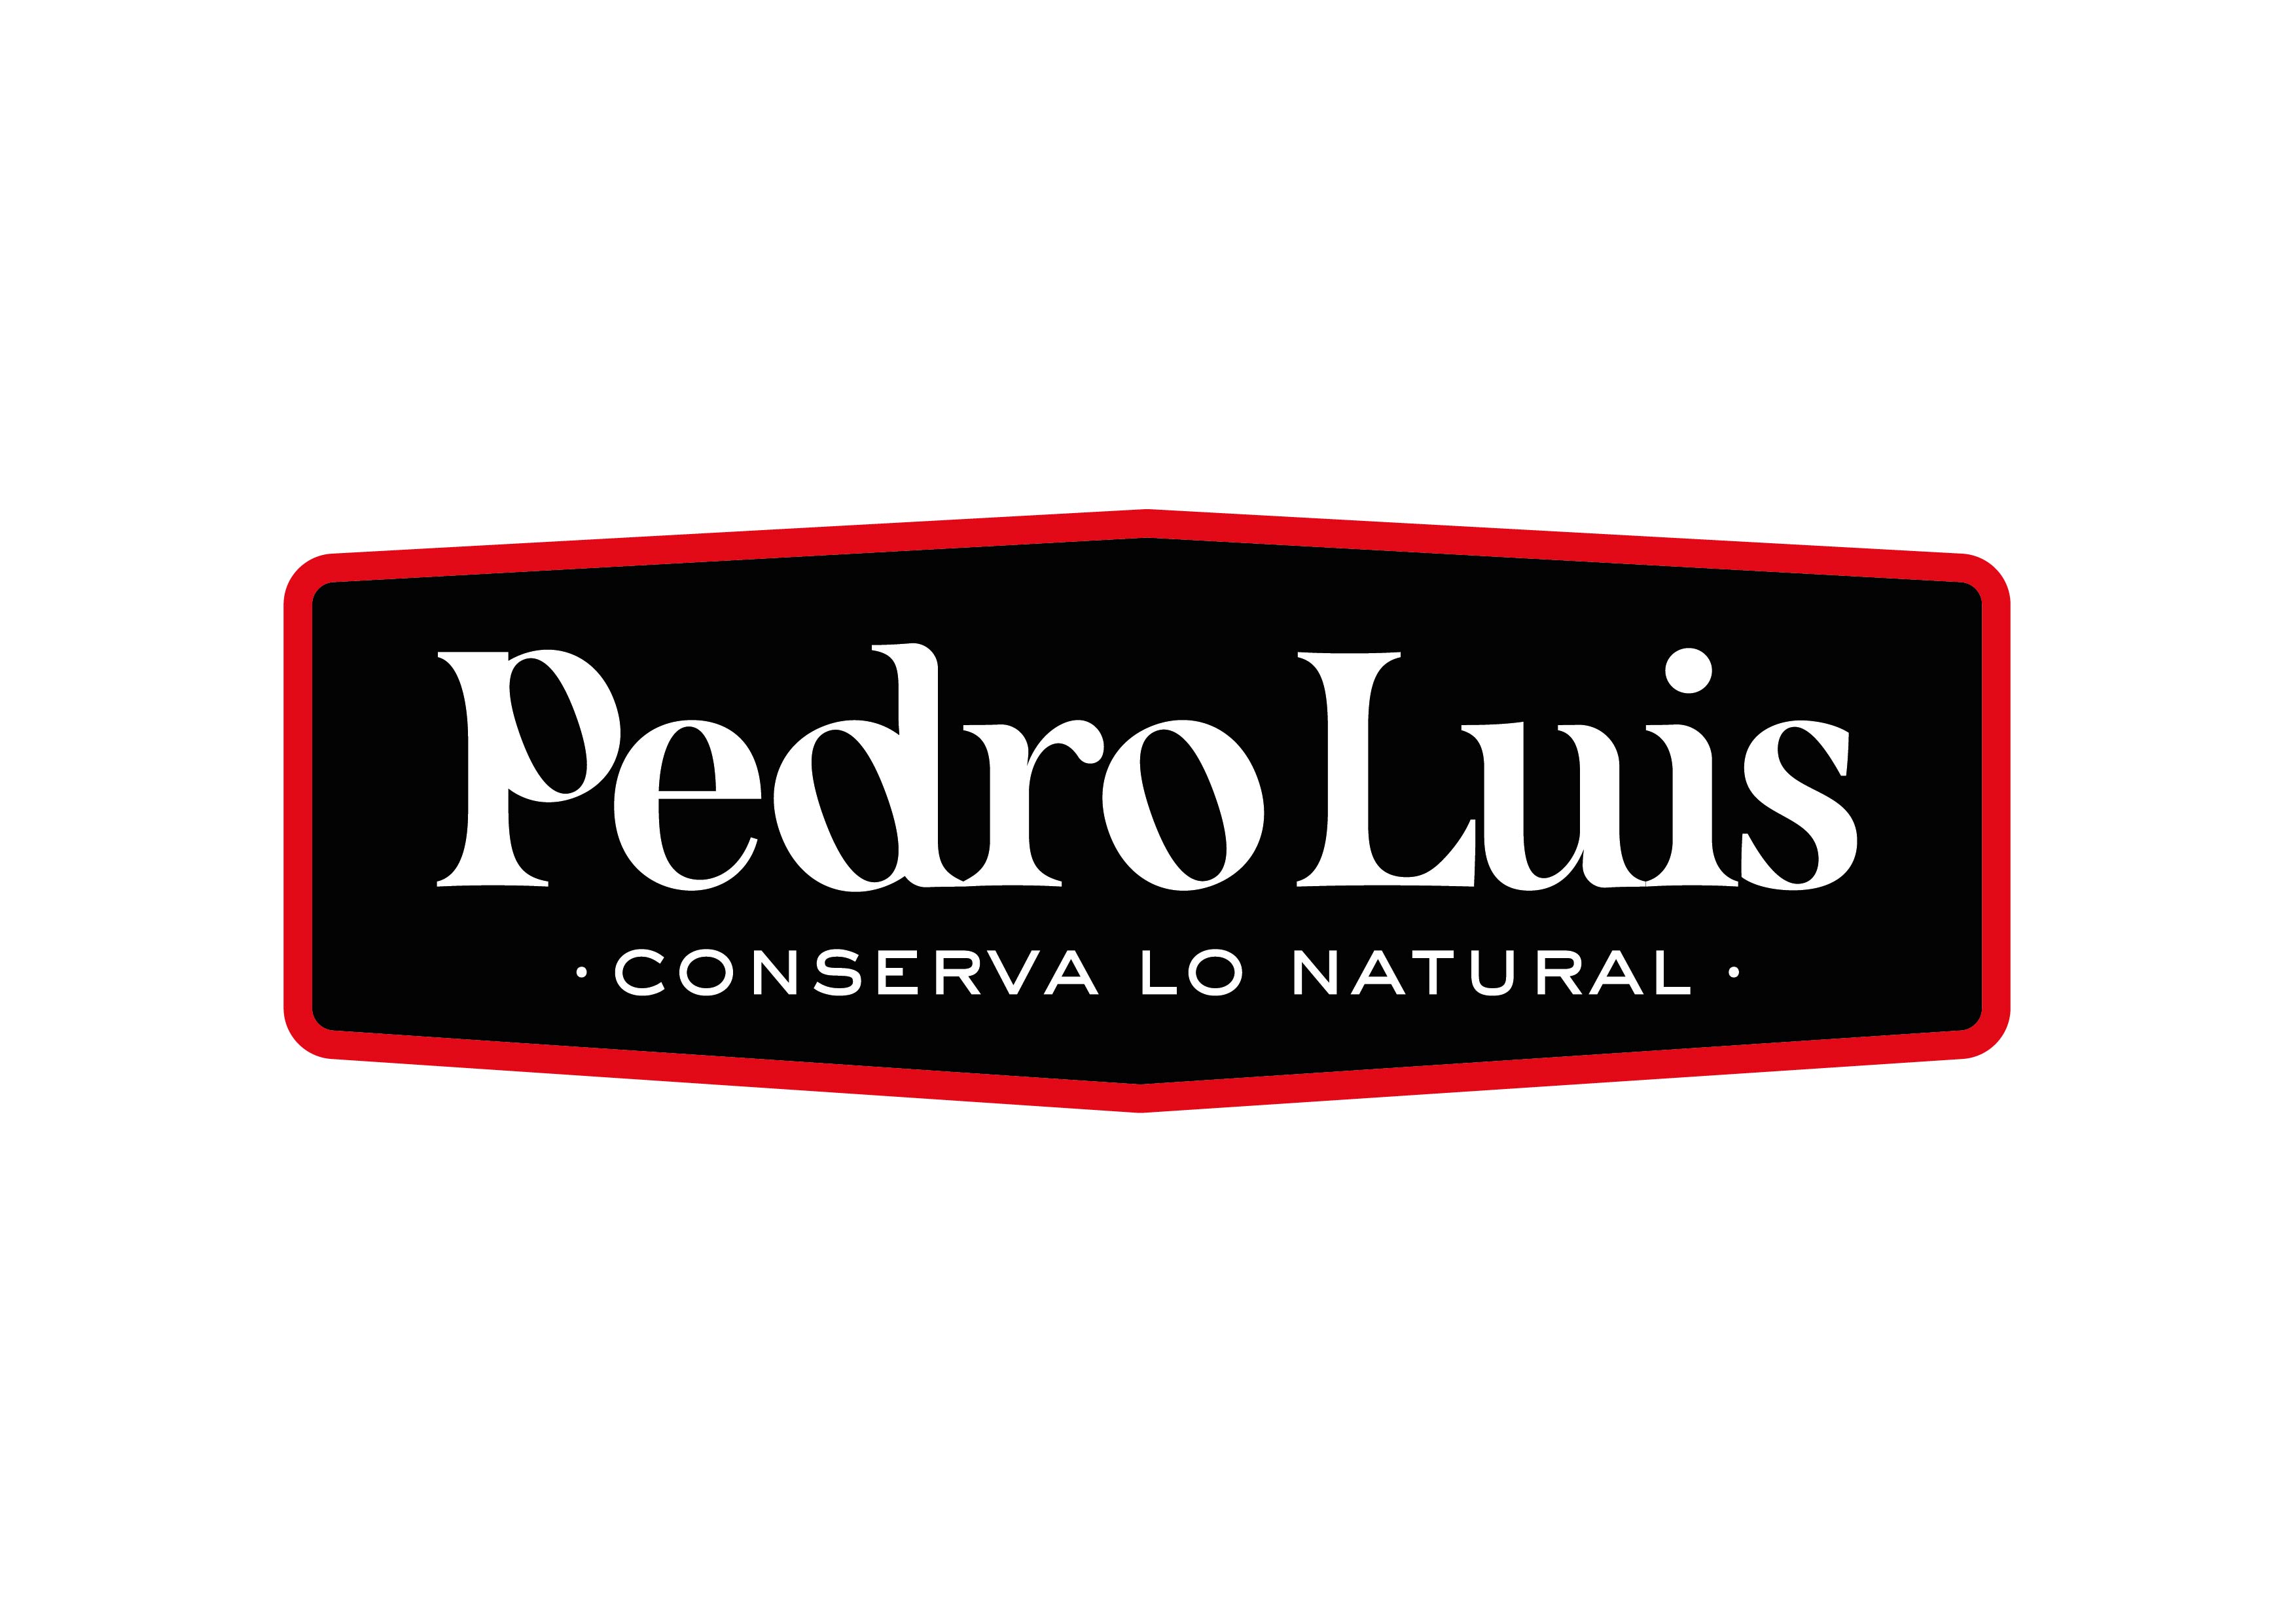 Conservas Pedro Luis - España - Productos hortofrutícolas